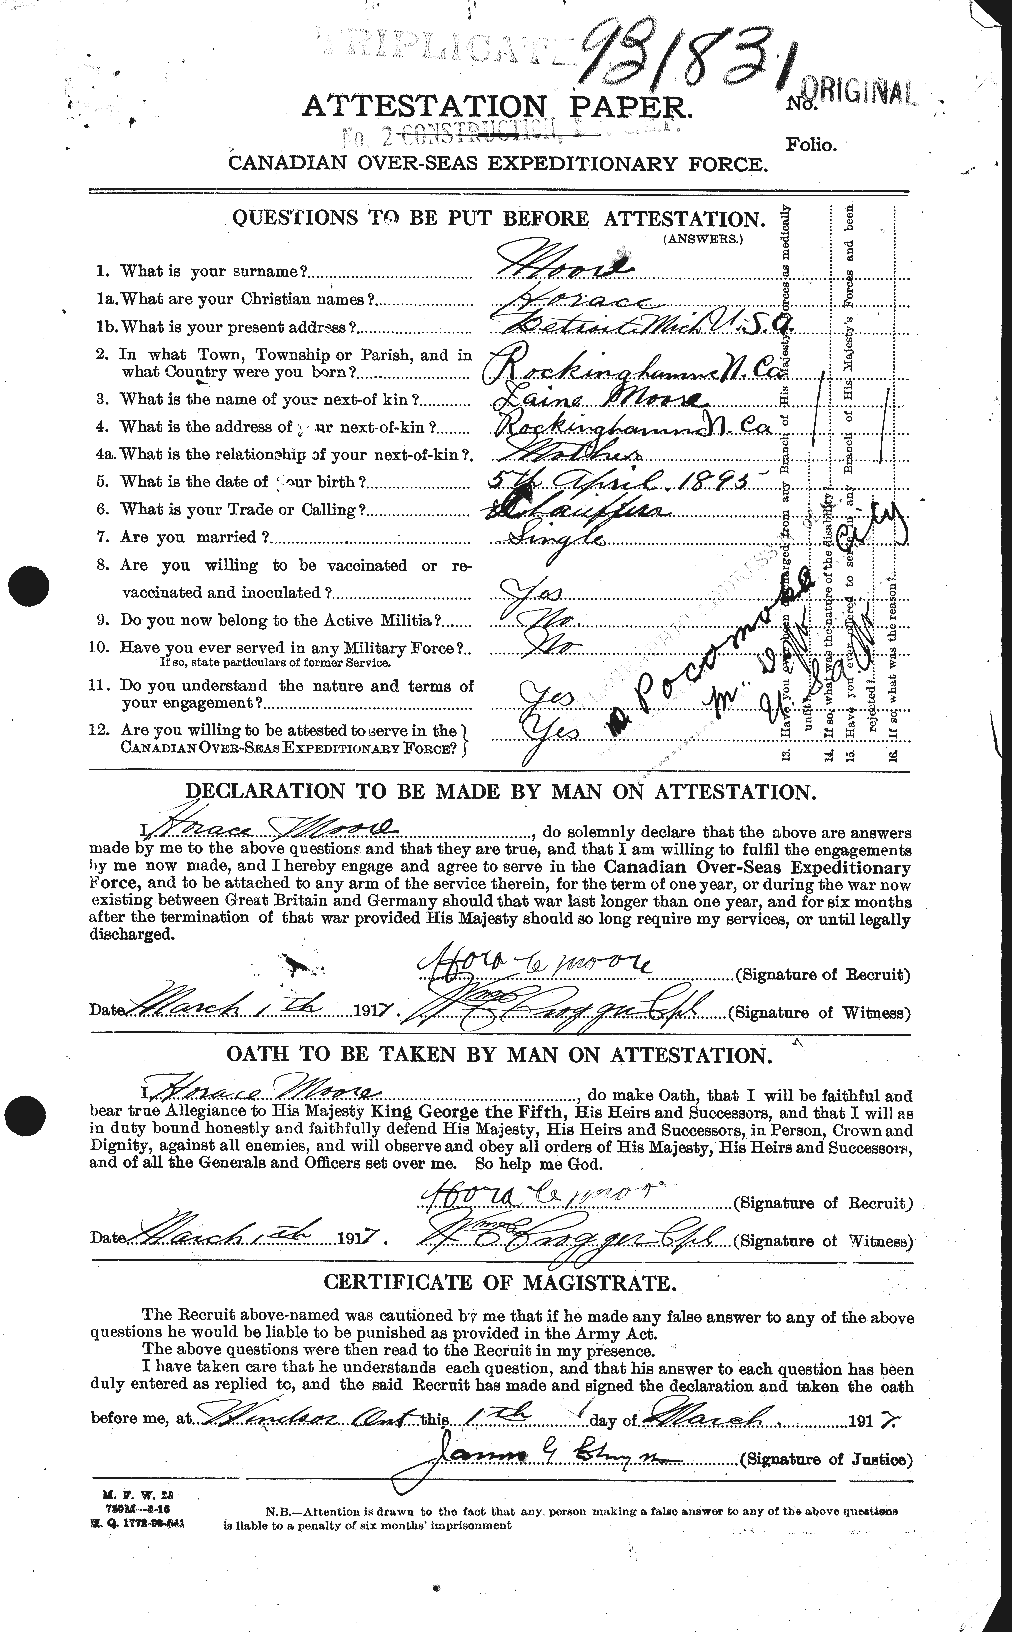 Dossiers du Personnel de la Première Guerre mondiale - CEC 502132a